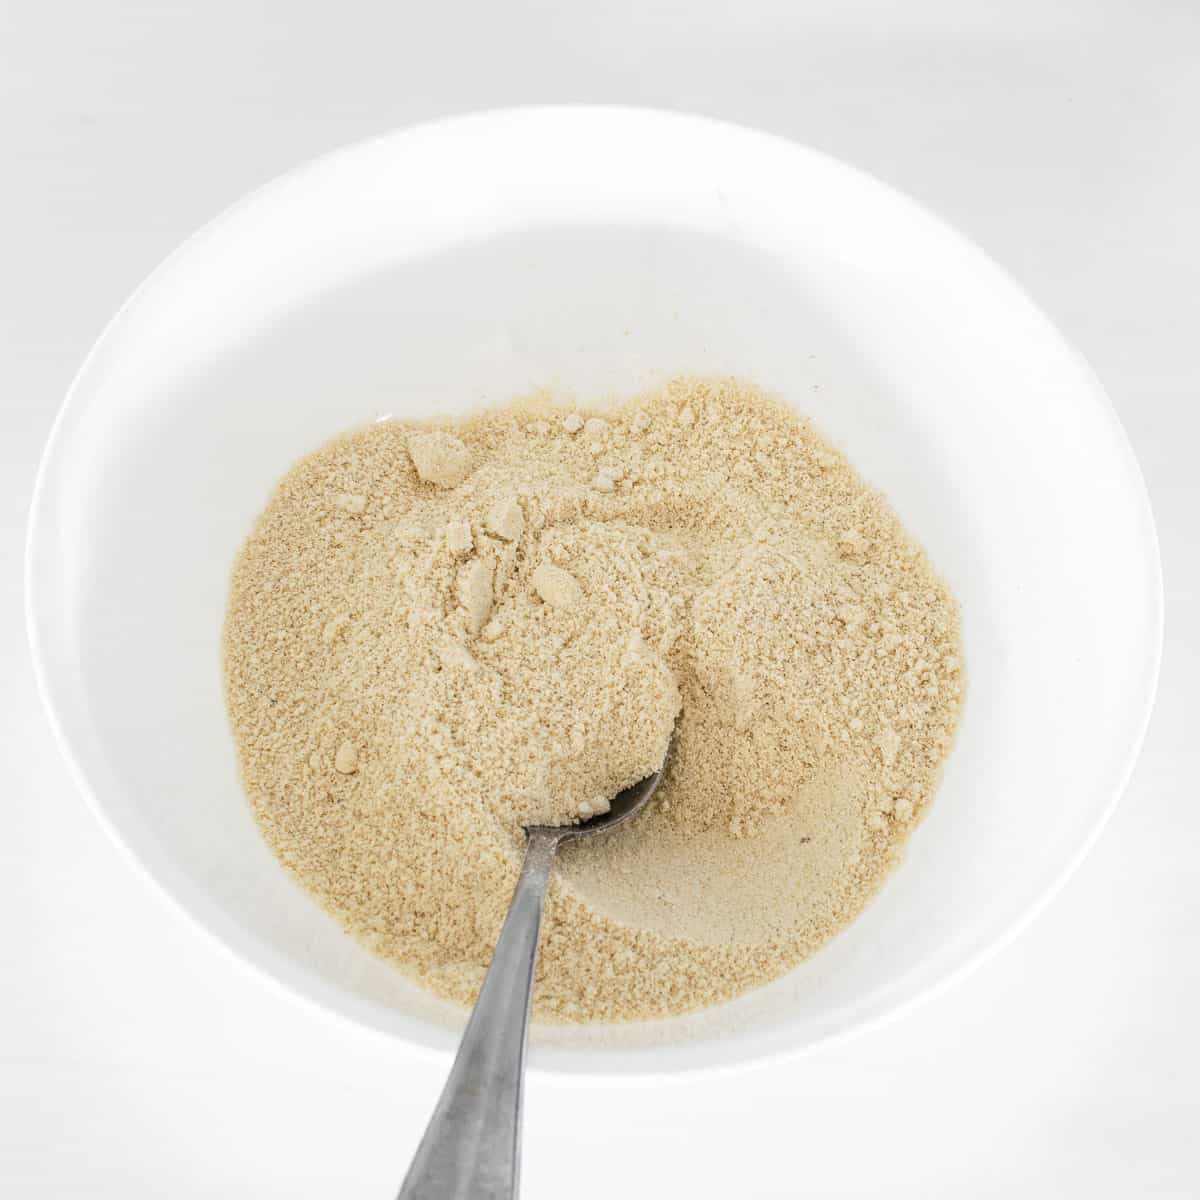 flour mixture in a bowl. 